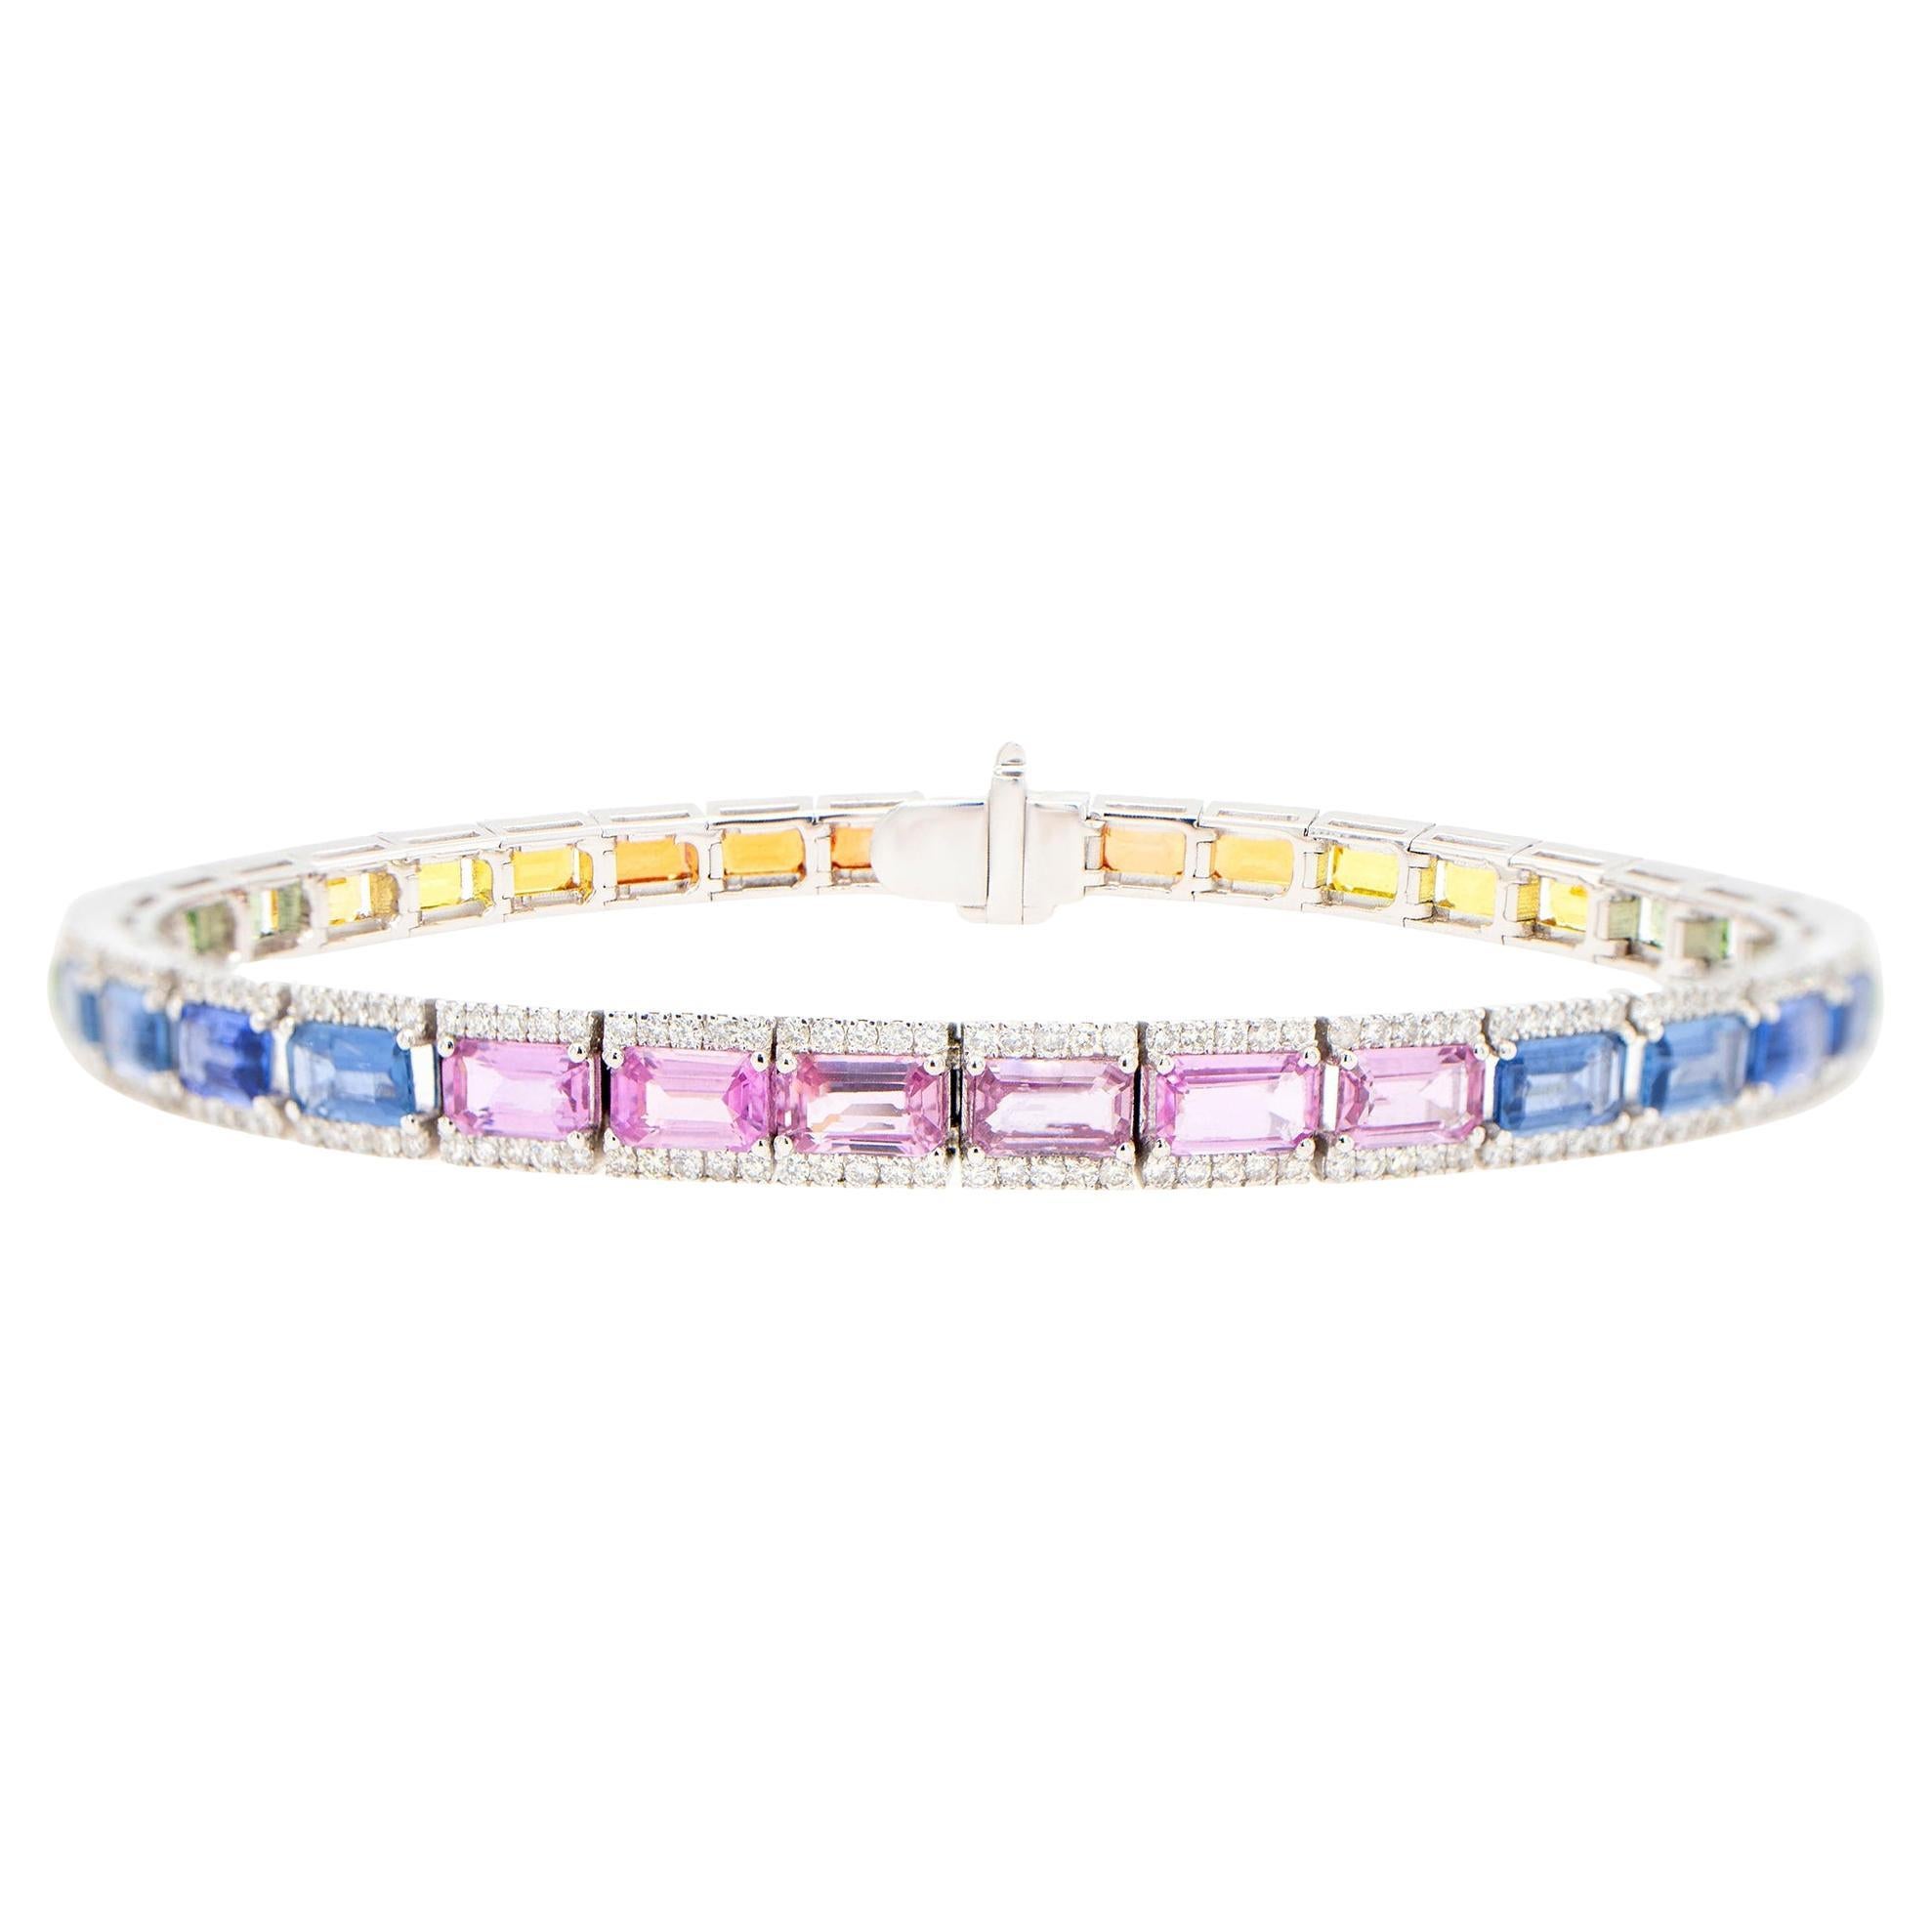 Mehrfarbiges Regenbogen-Armband mit 12,7 Karat Diamanten im Baguetteschliff und mehrfarbigen Saphiren mit Diamanten, 18K